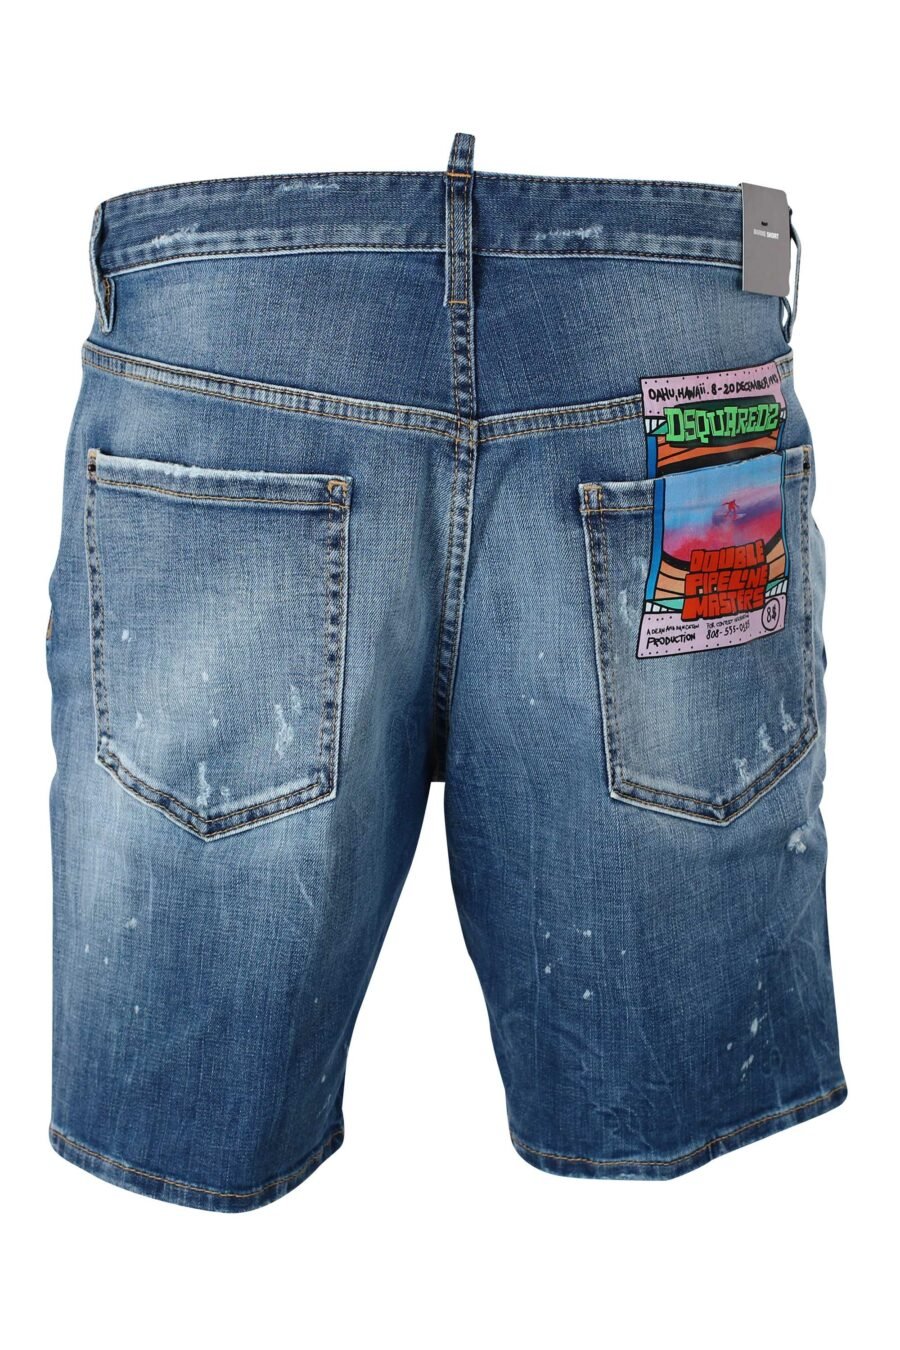 Blaue Denim-Shorts mit Aufnäher und grafischem Aufdruck auf dem Rücken - IMG 9595